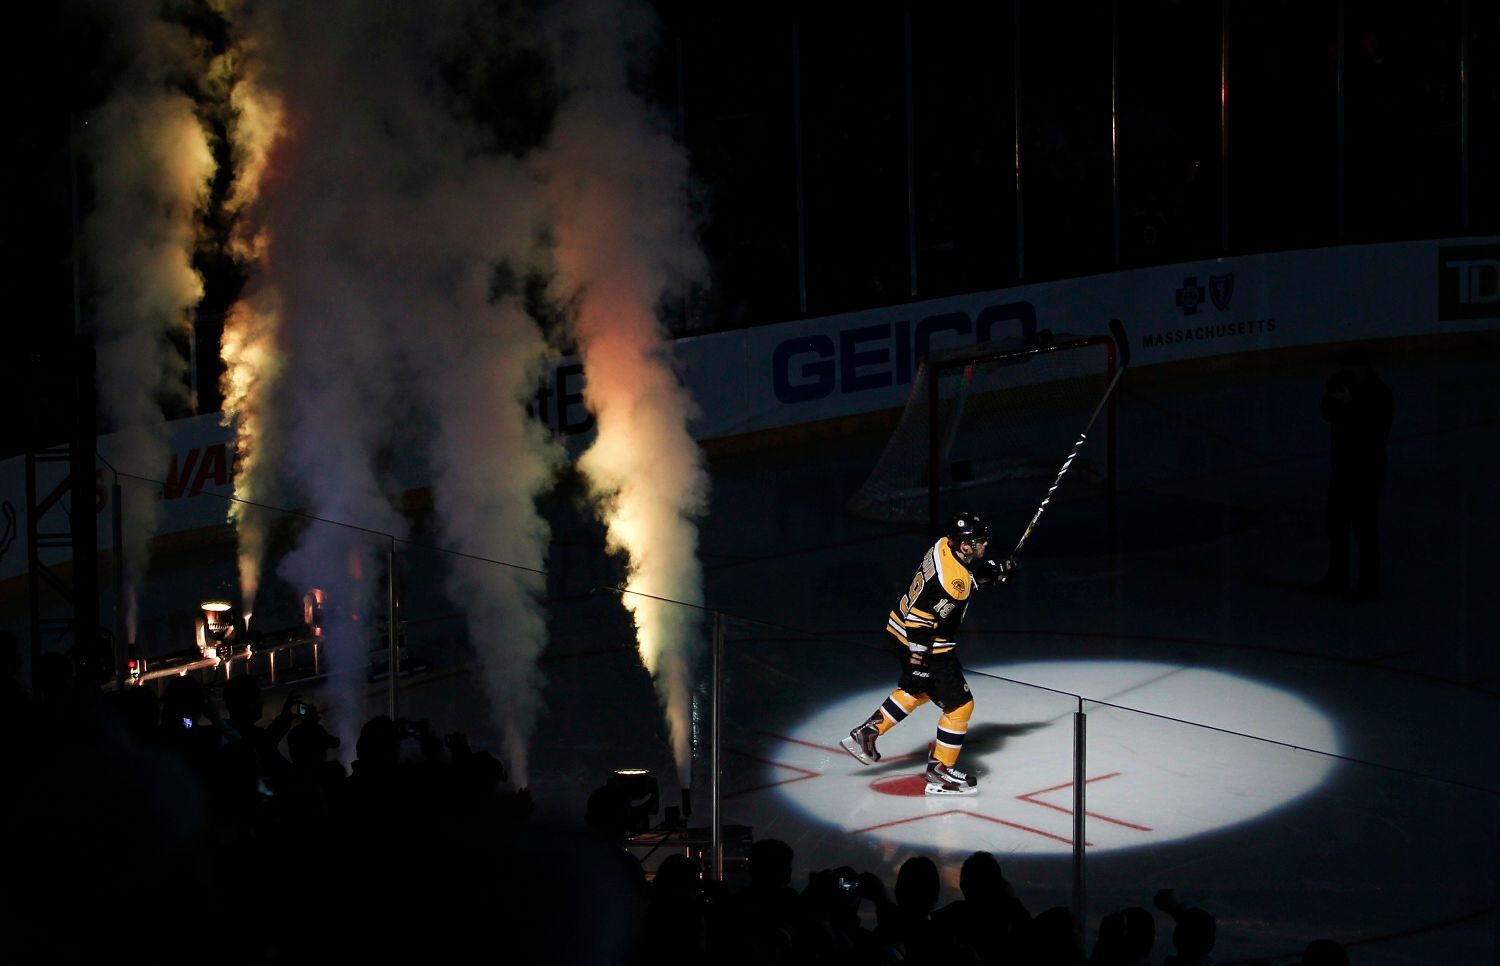 NHL, Boston Bruins: Tyler Seguin